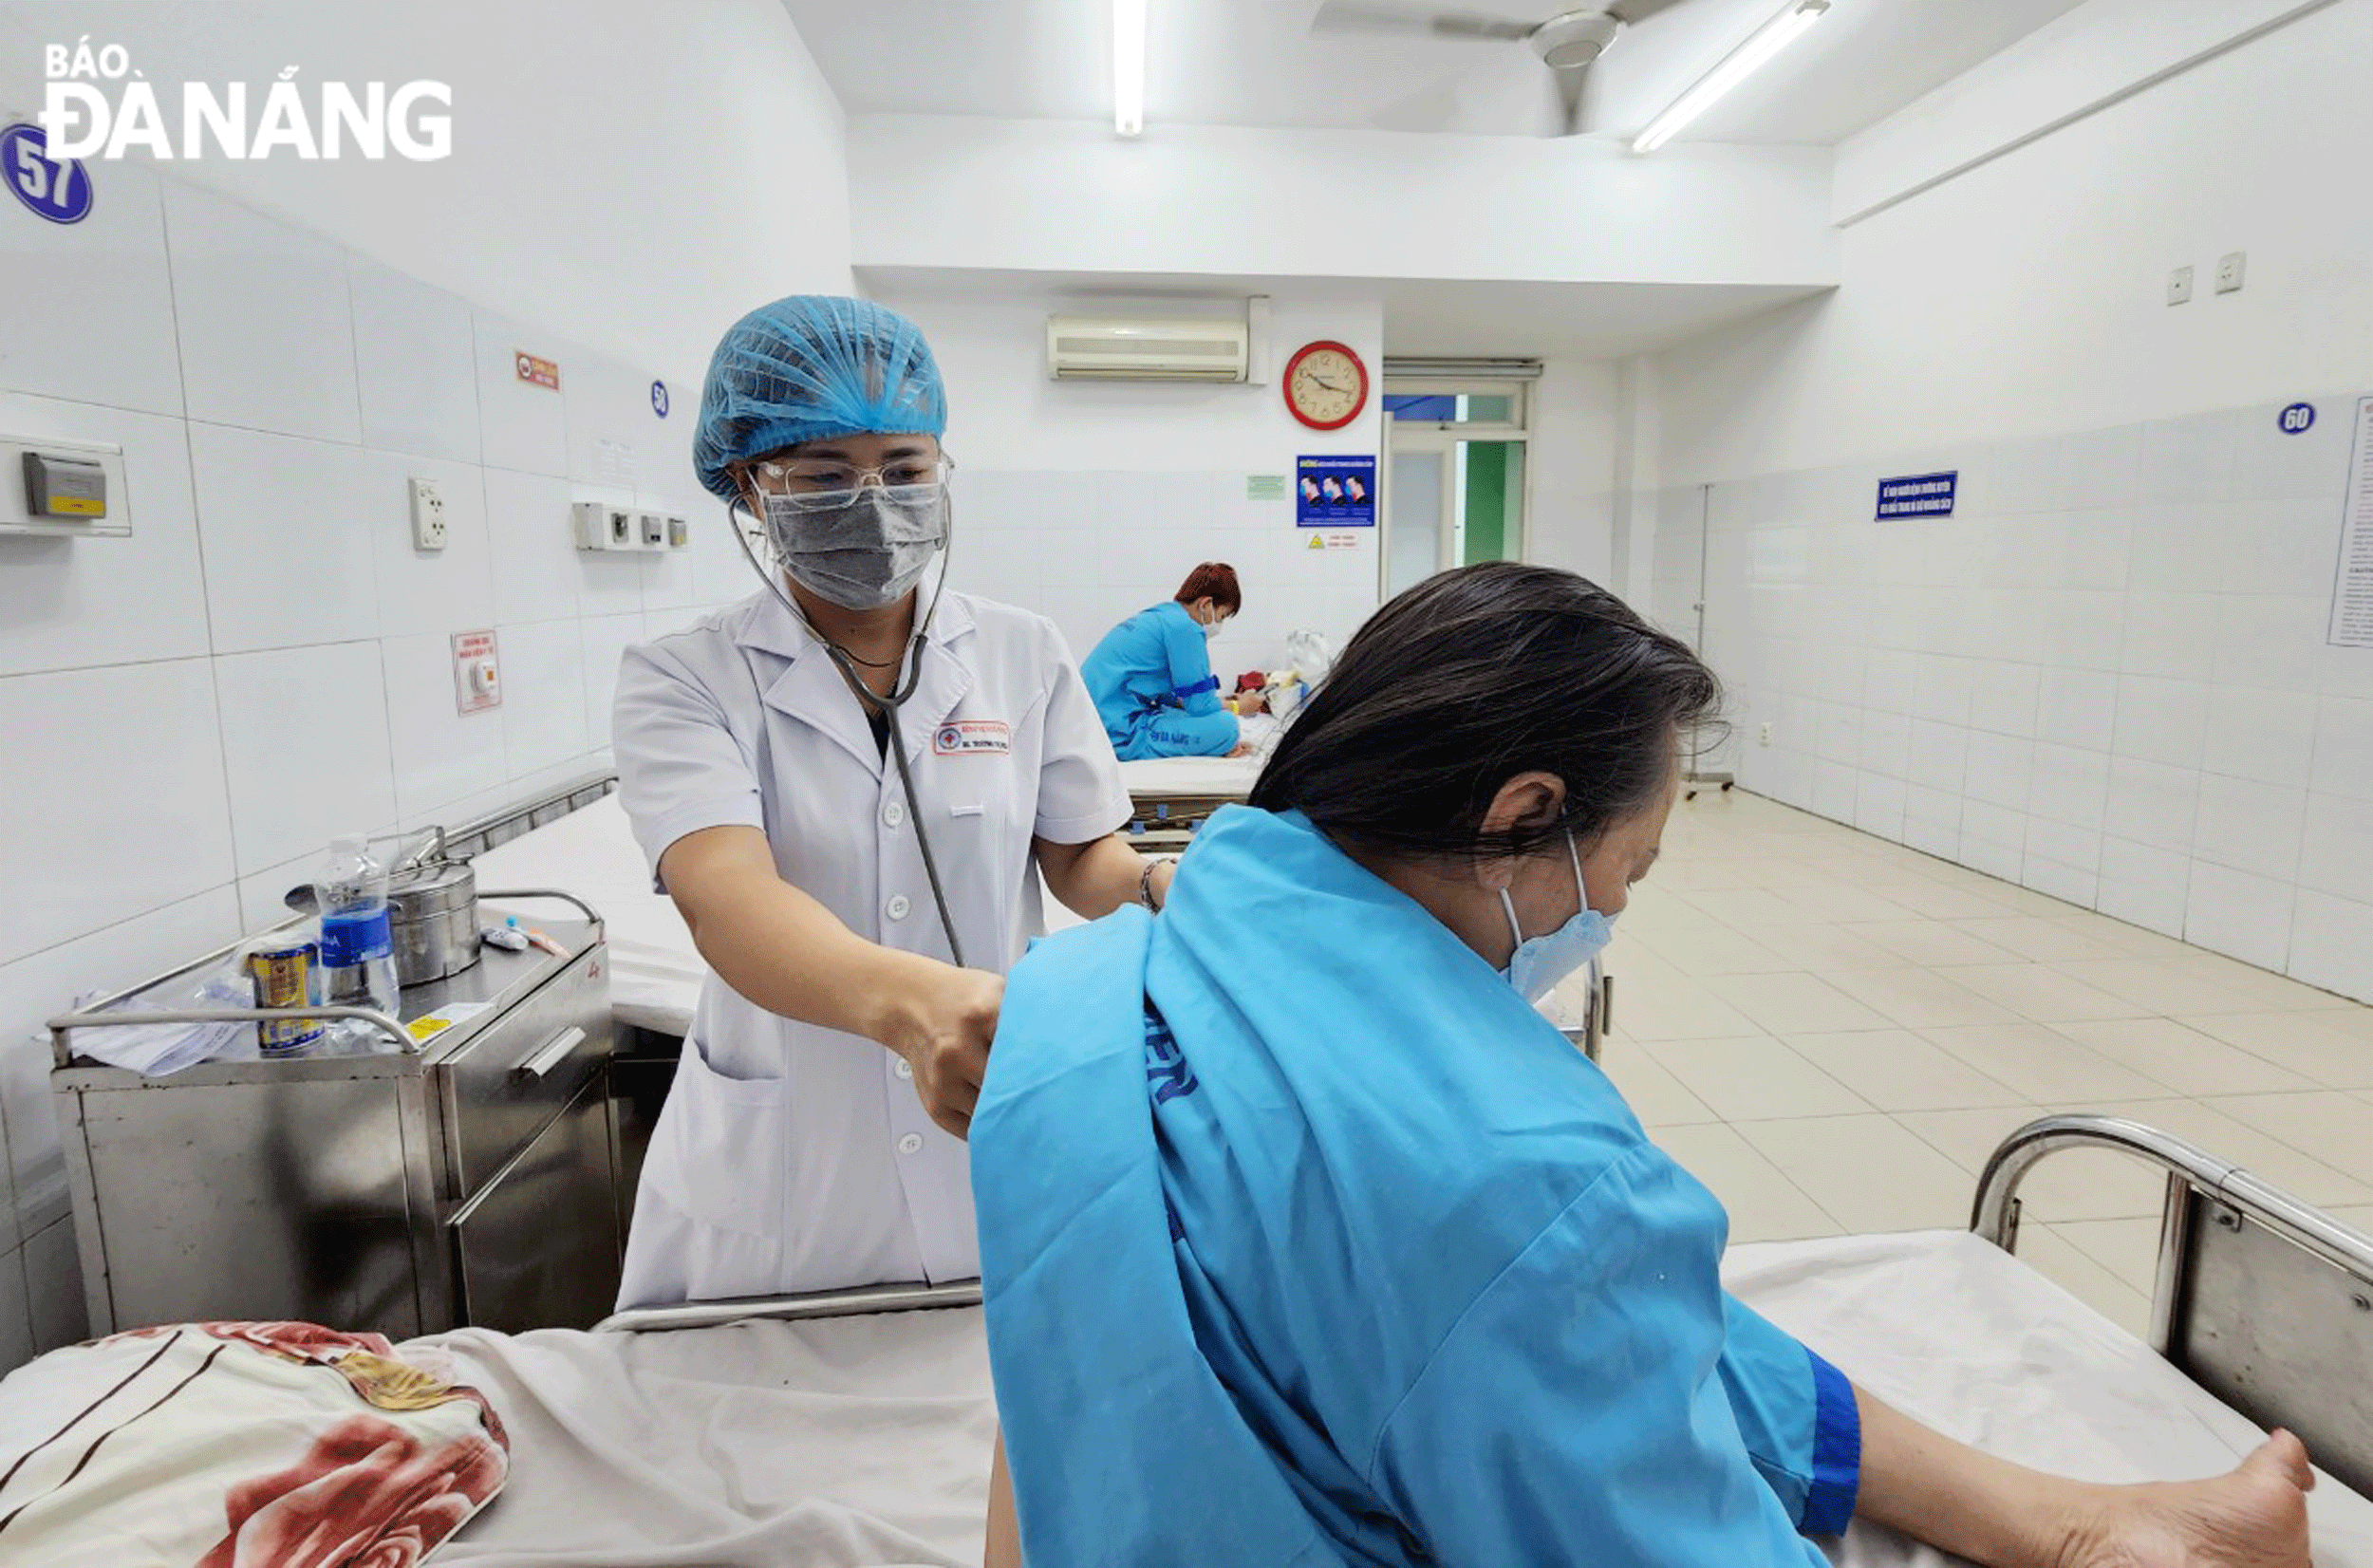 Patients receiving medical care at the Da Nang Hospital. Photo: PHAN CHUNG